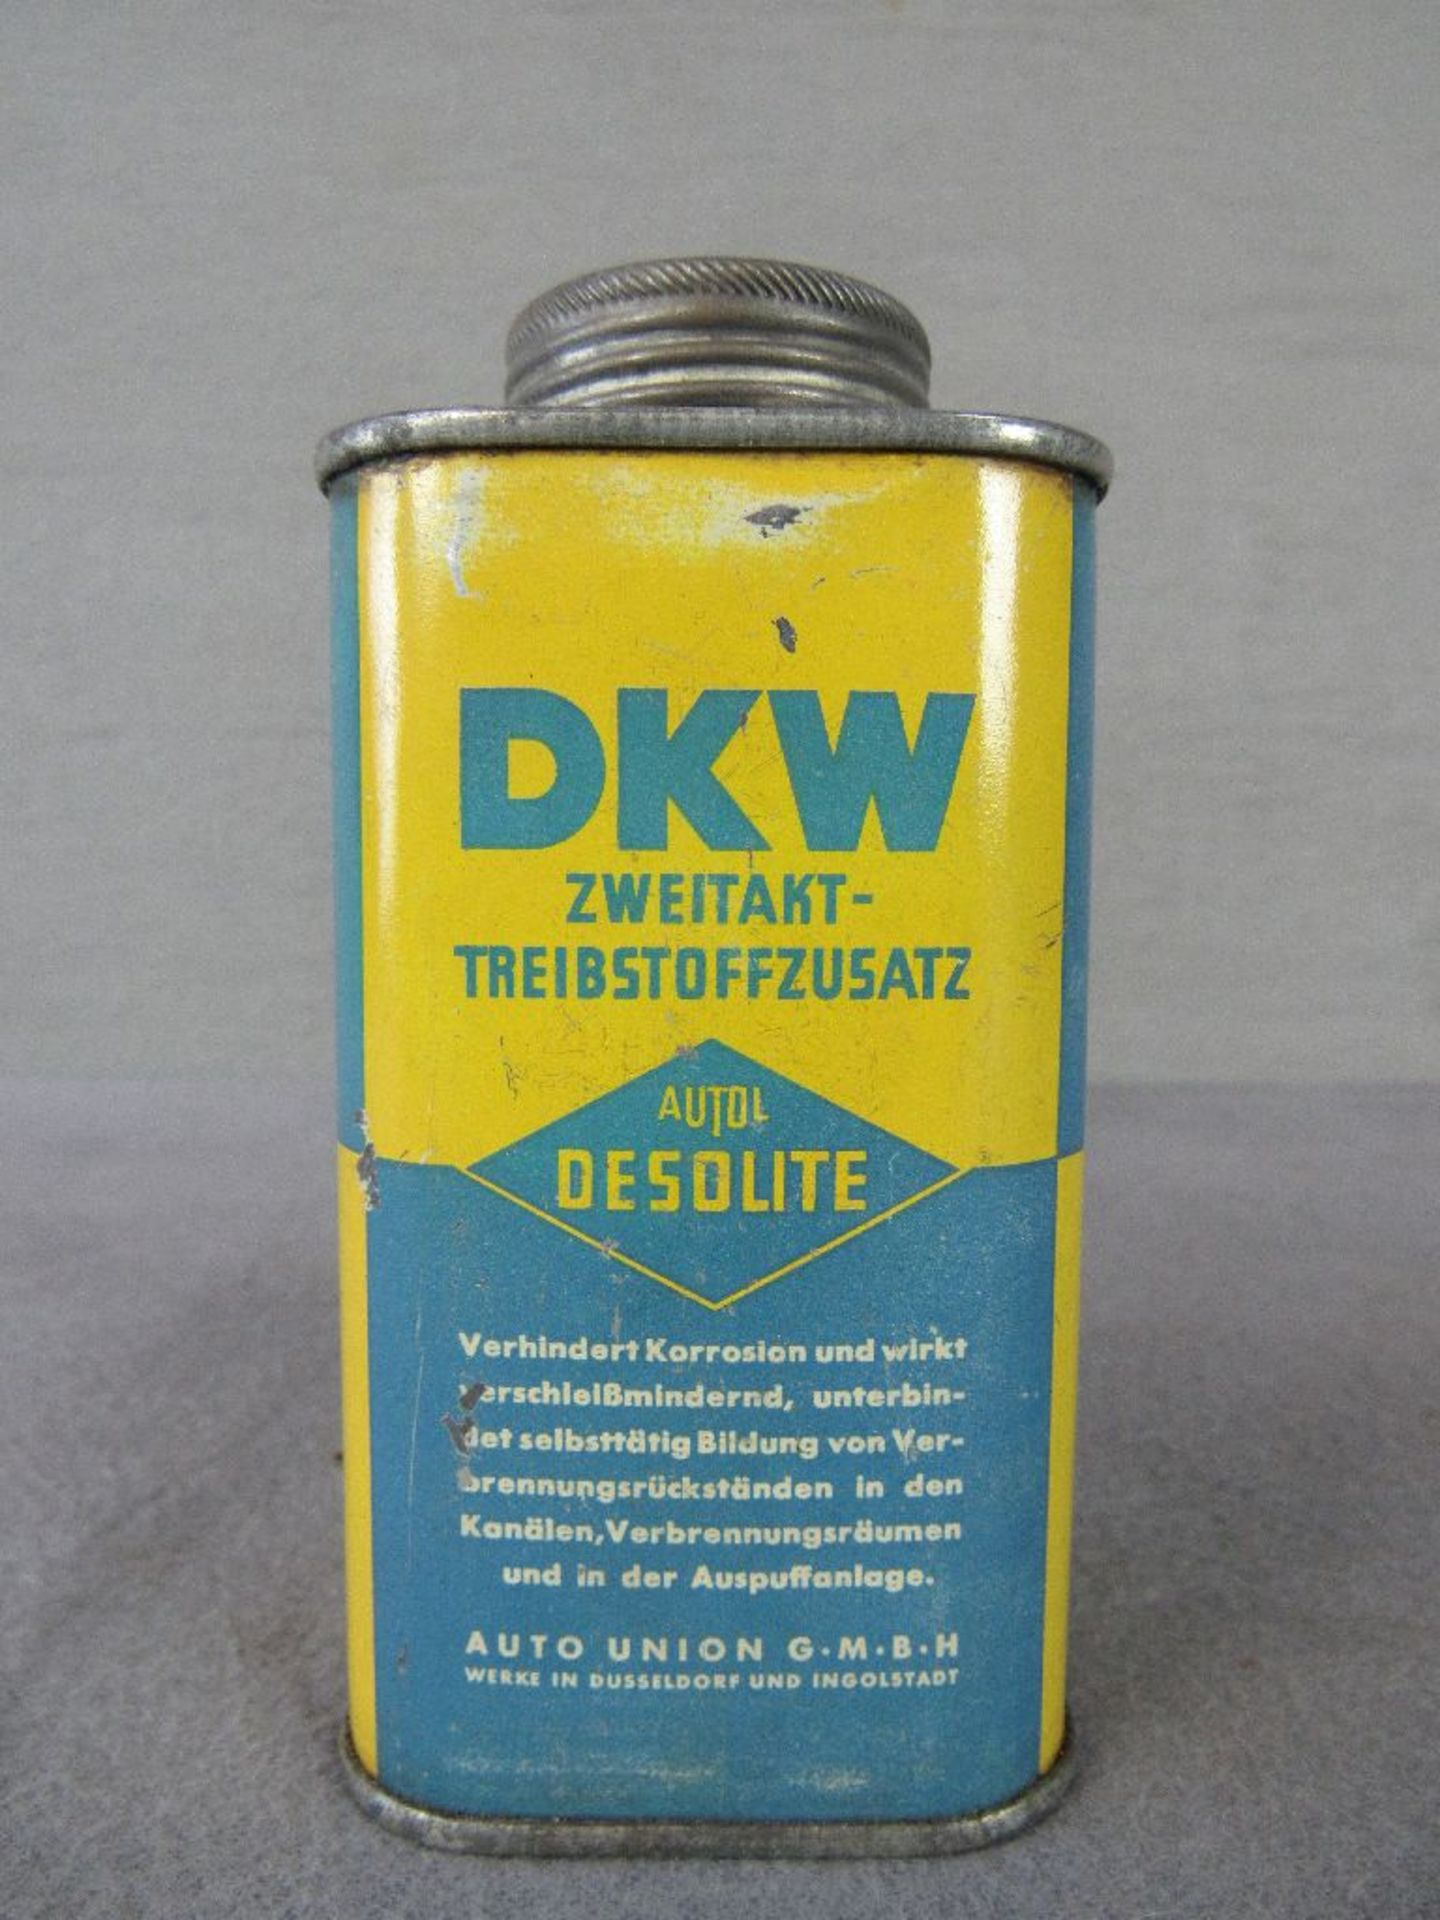 Zweitakt Krafstoffzusatz DKW Oldtimer Blech 13cm hoch